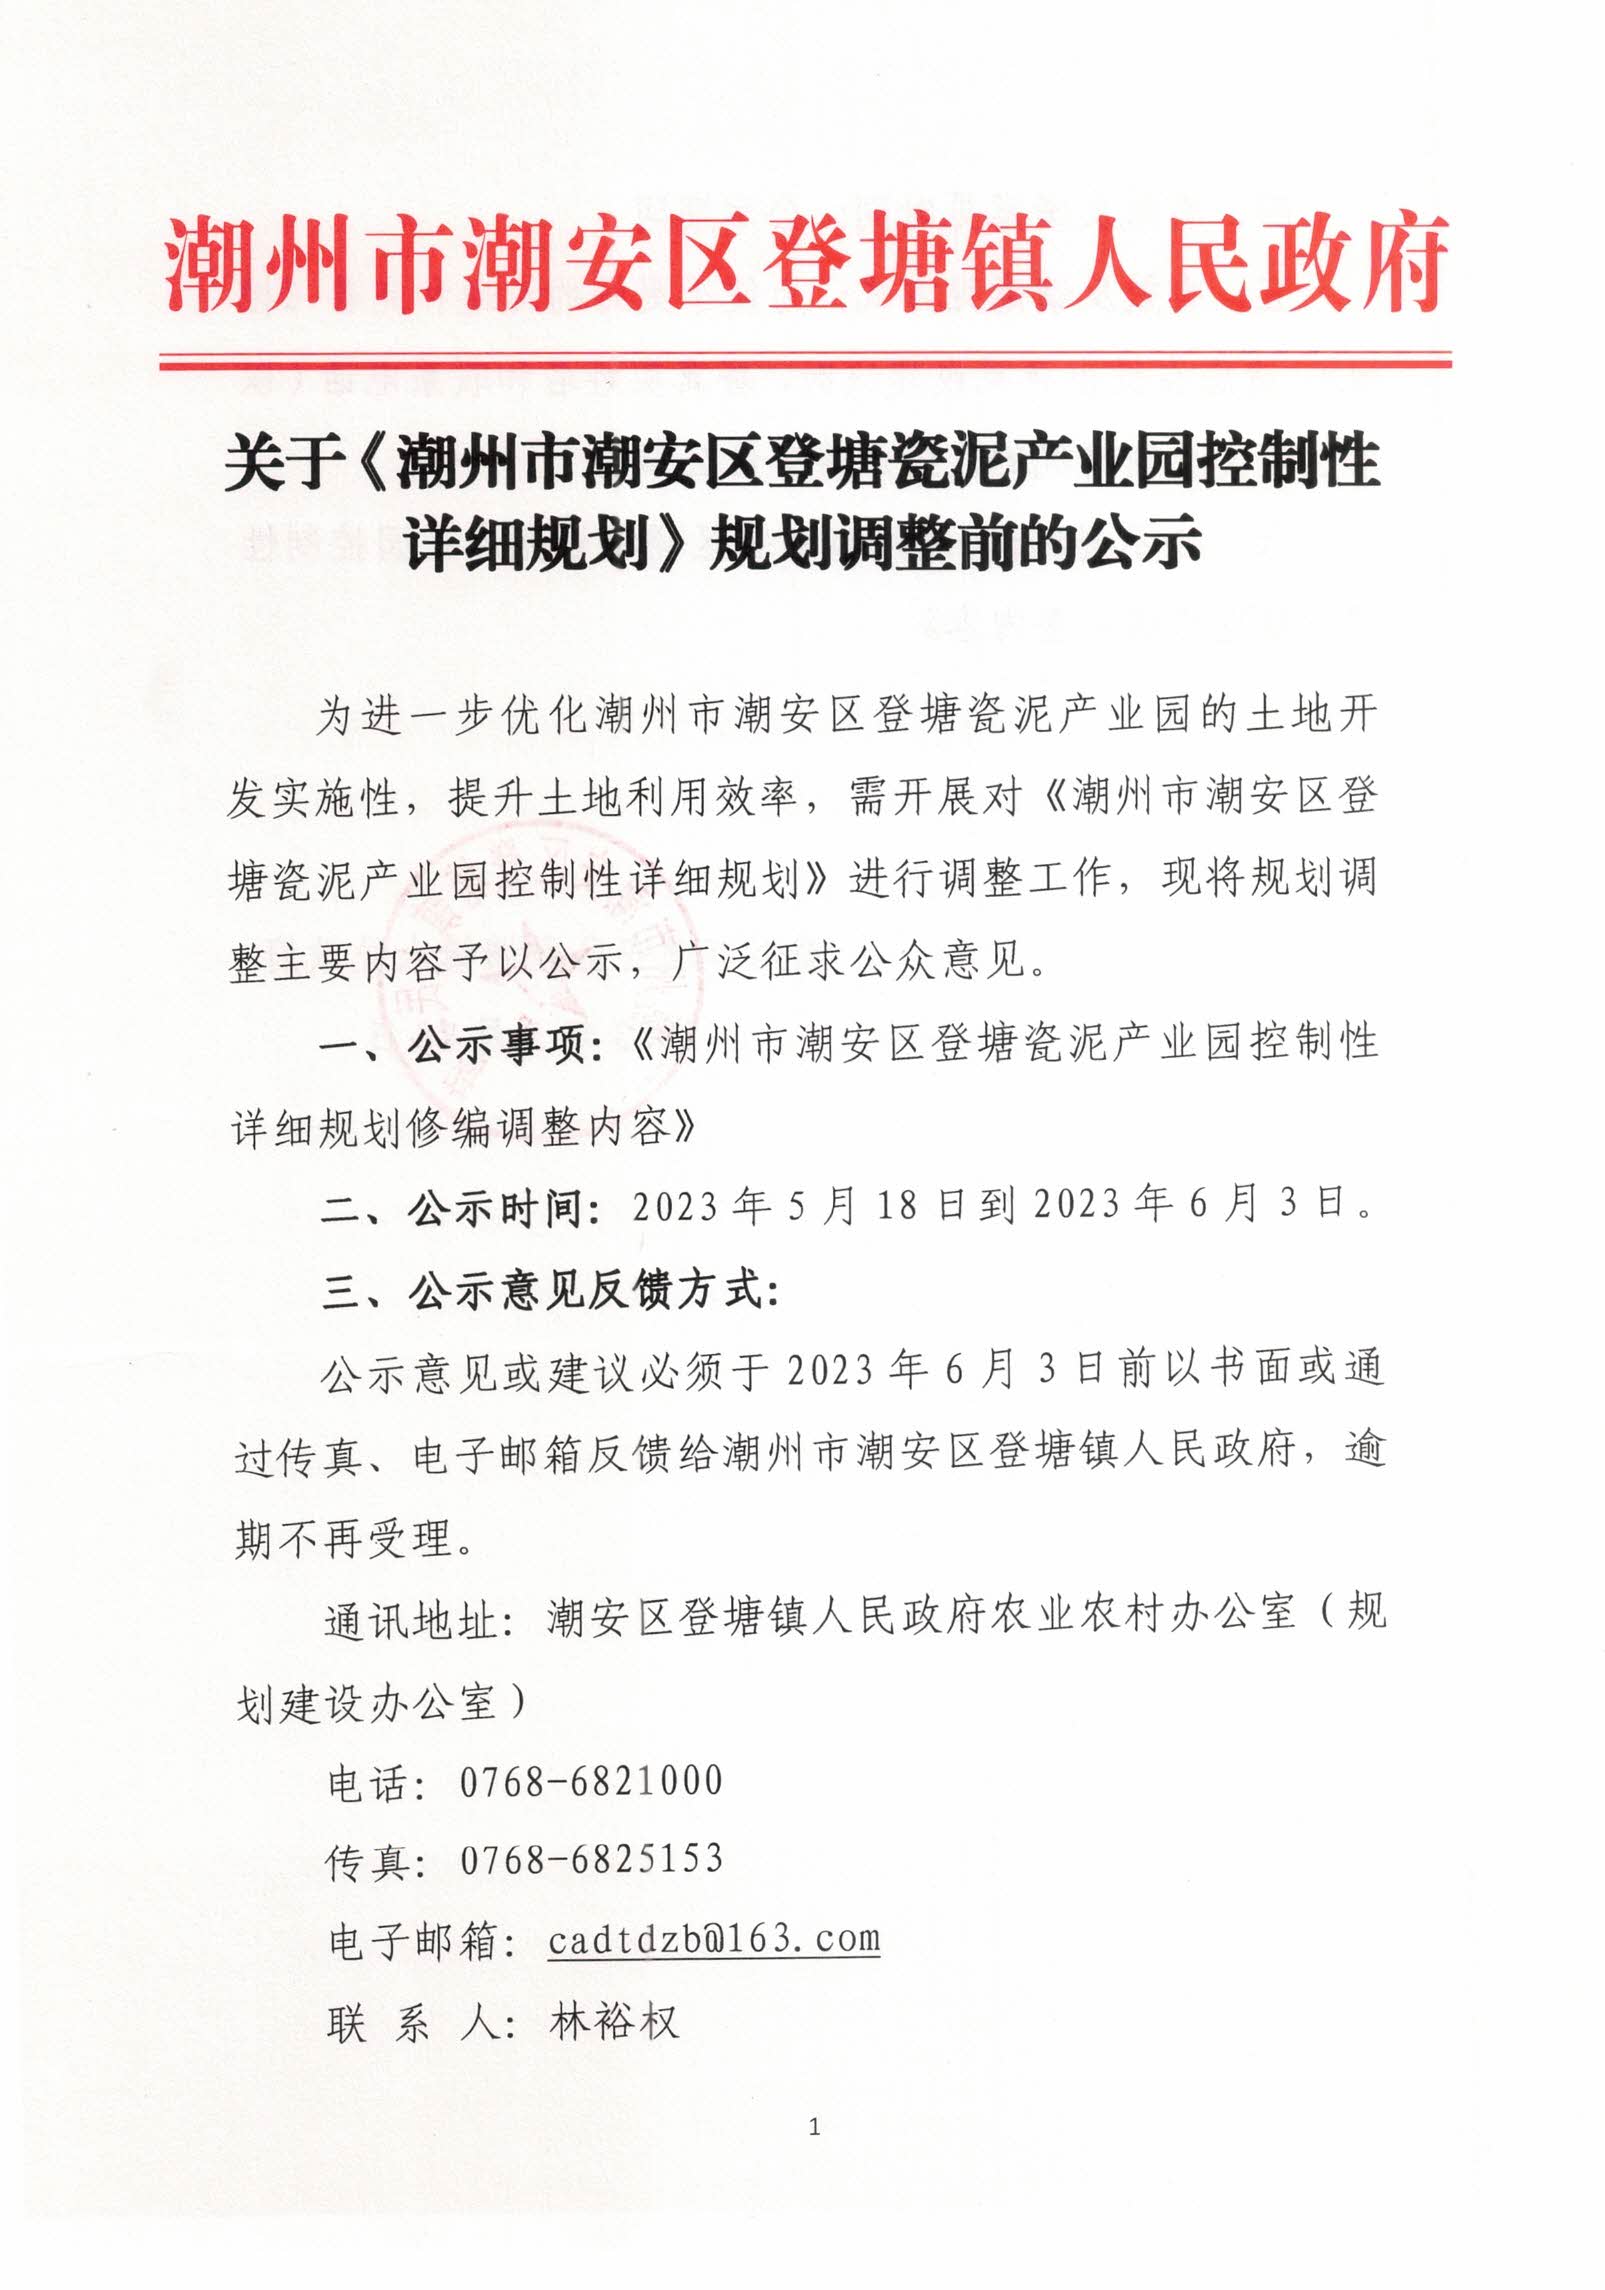 关于《潮州市潮安区登塘瓷泥产业园控制性详细规划》规划调整前的公示（1）.jpg